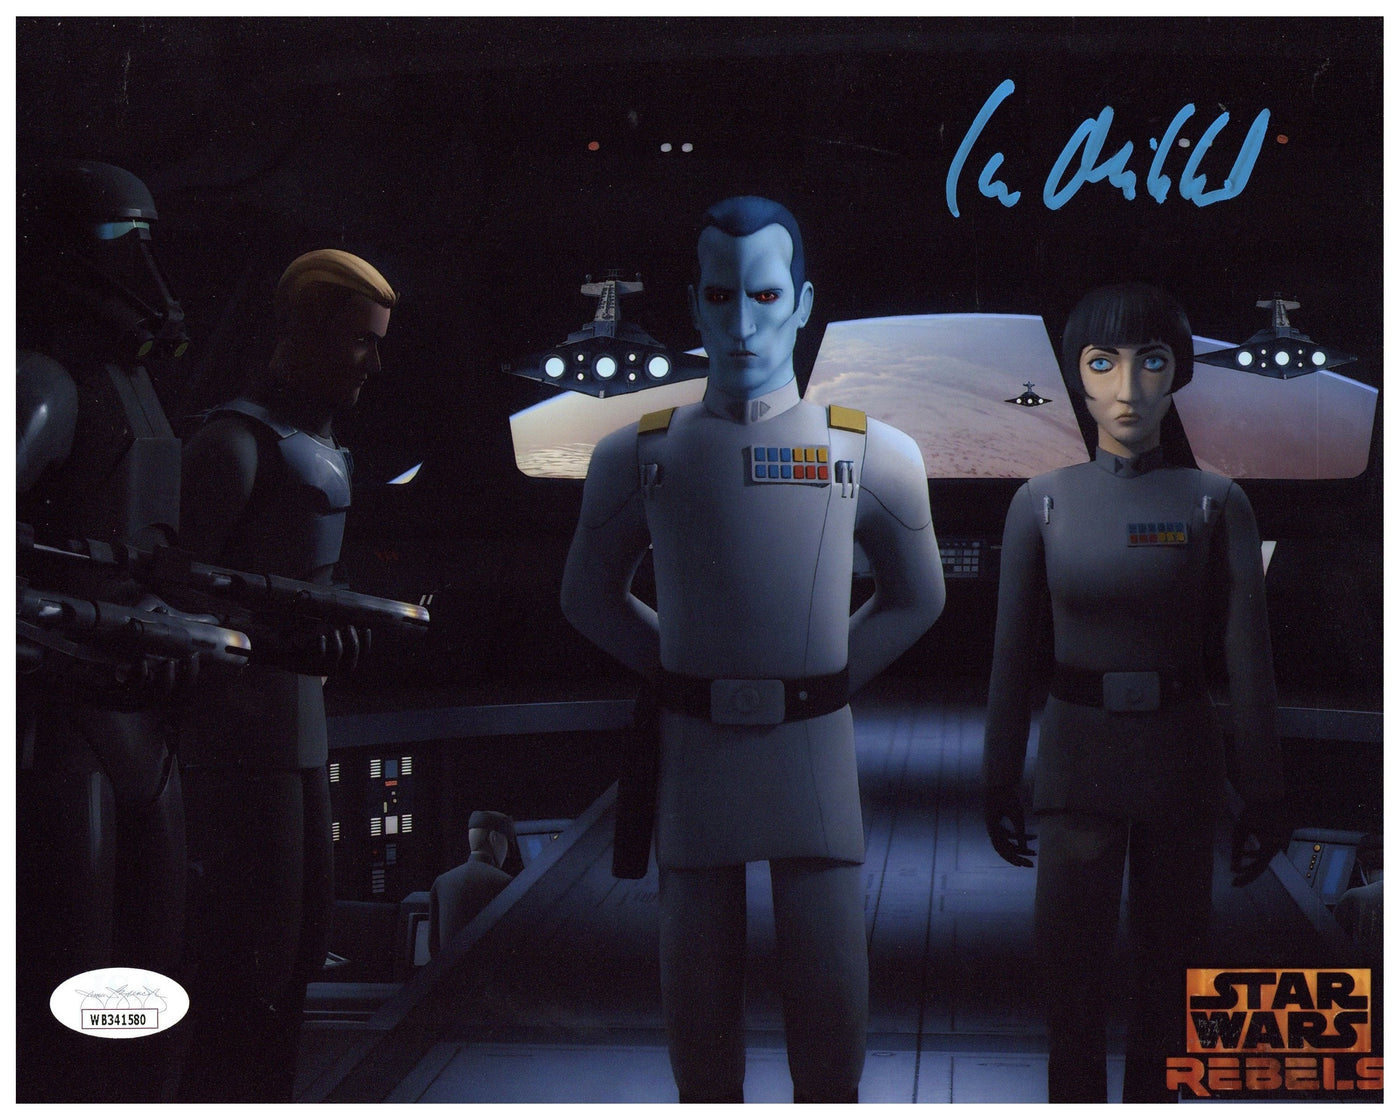 SPECIAL Lars Mikkelsen Signed 8x10 Photo Star Wars Rebels Autographed JSA COA #1